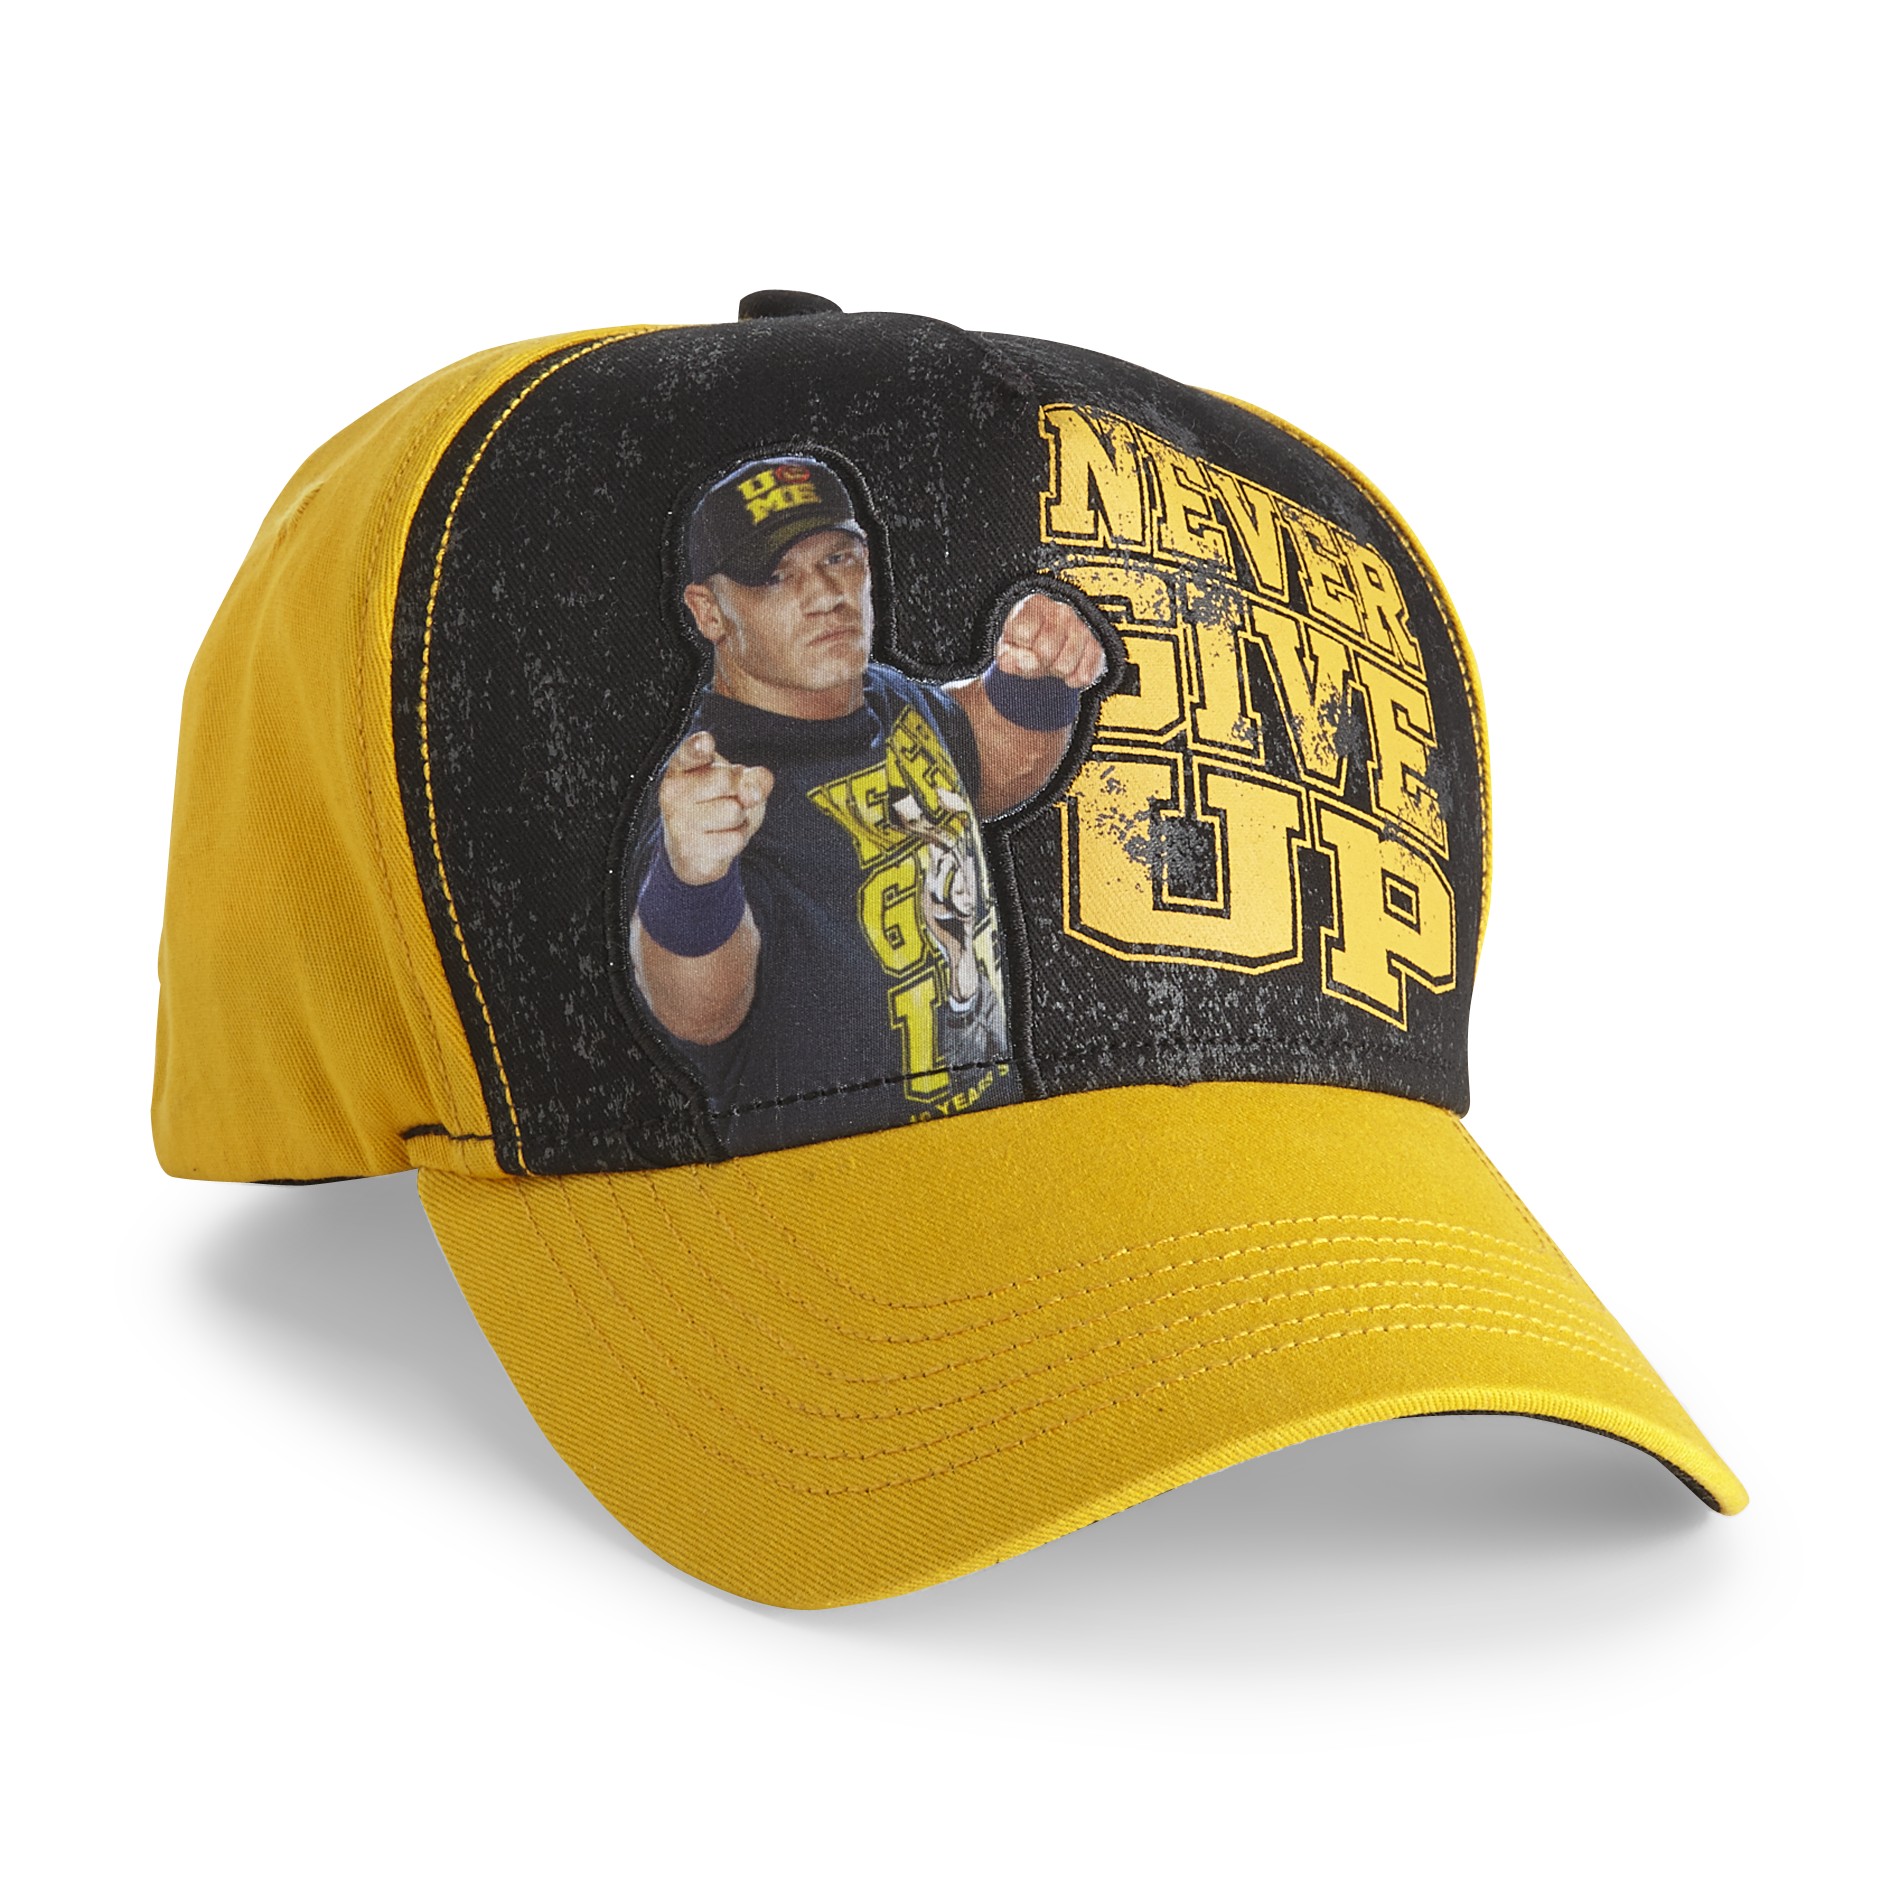 Never Give Up By John Cena Boy's Hat